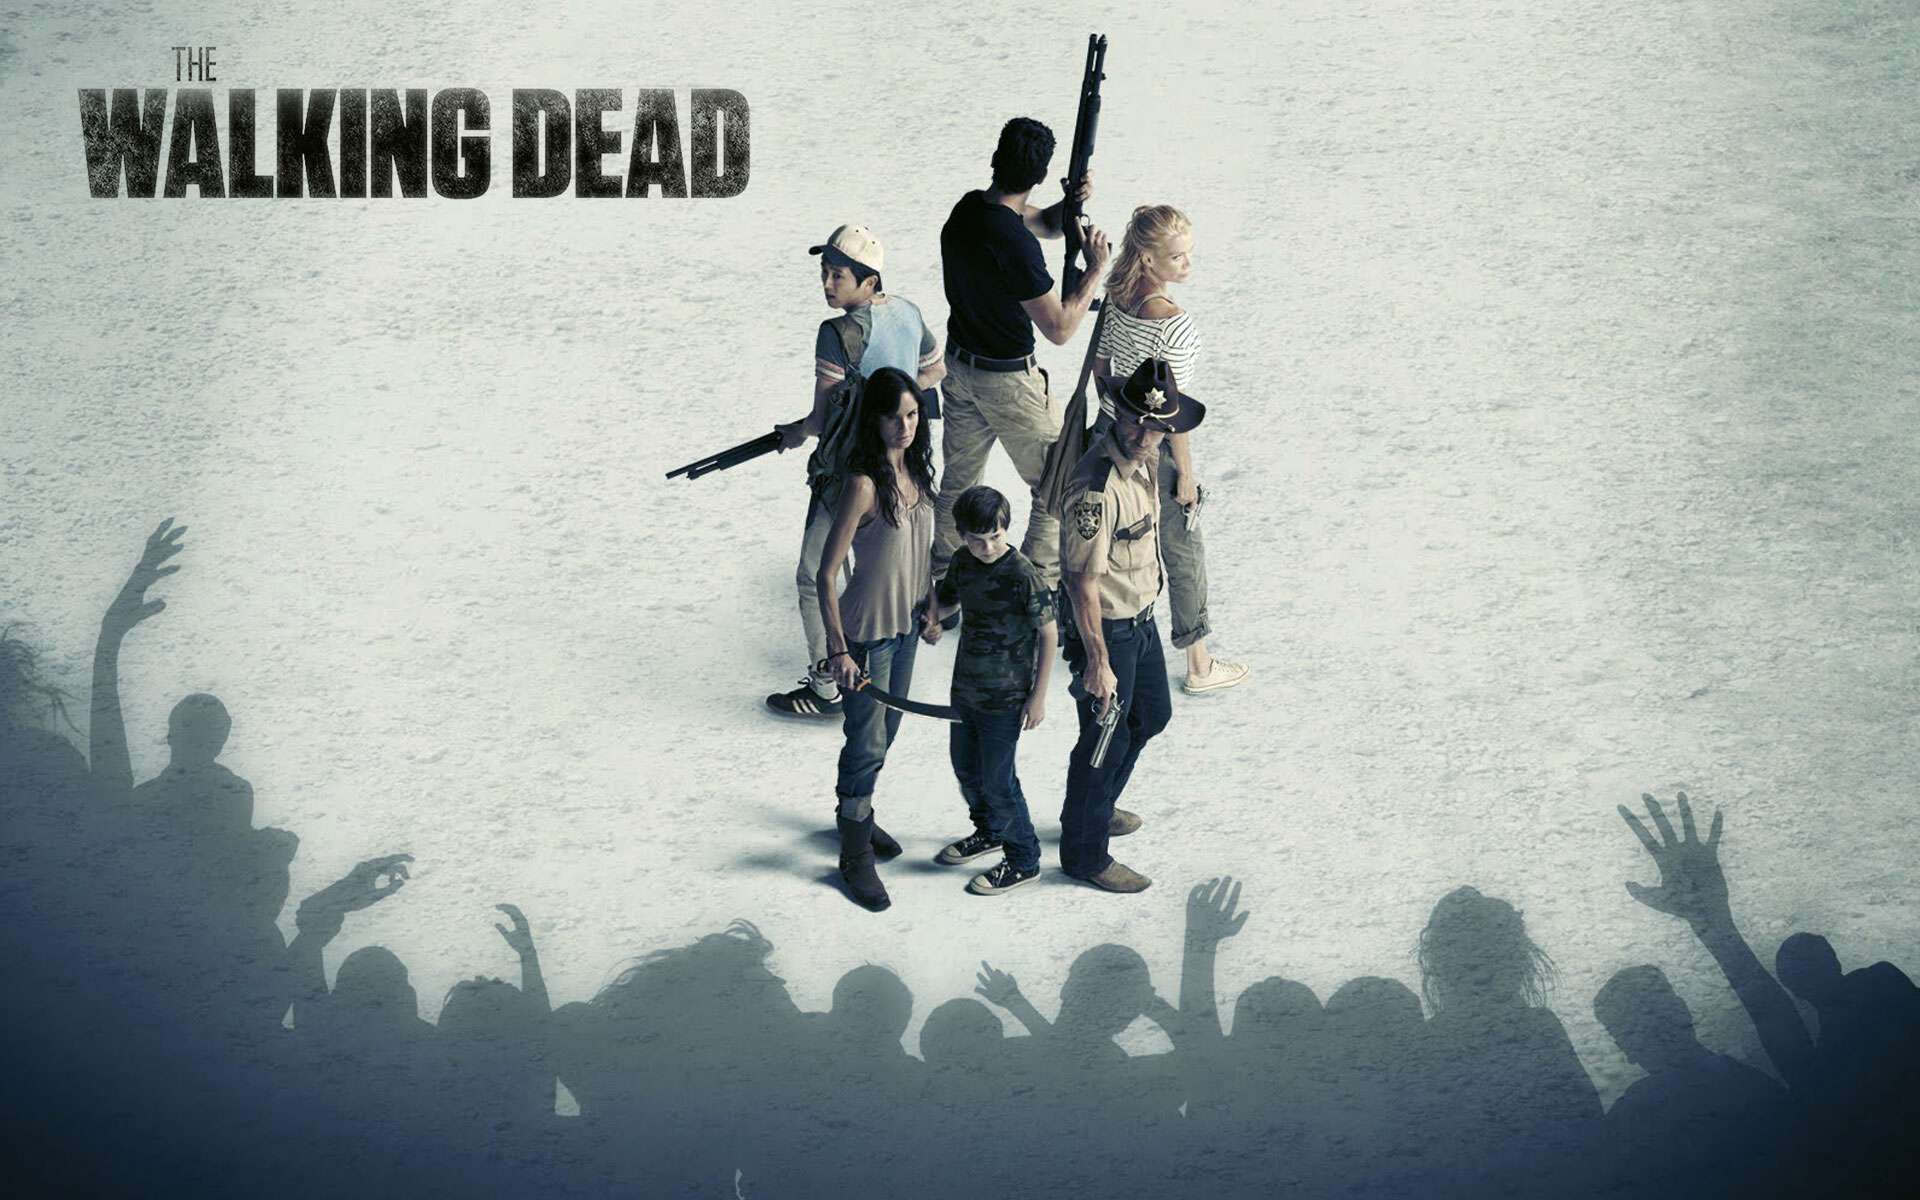 The Walking Dead Wallpaper HD Video Musical De Twd